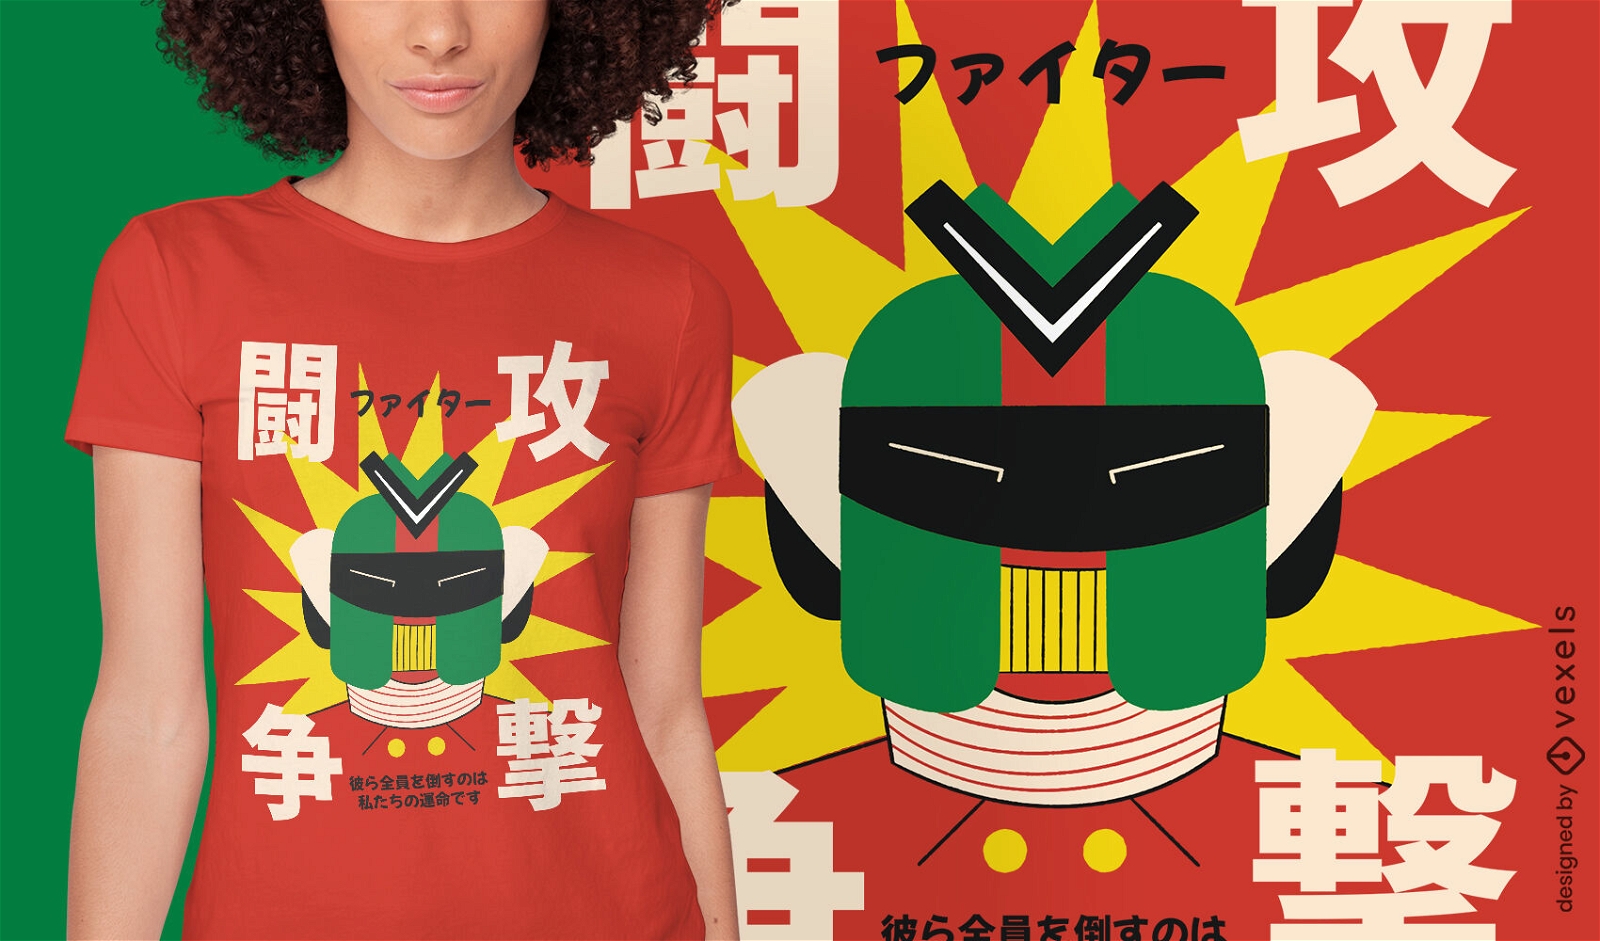 Japanisches Roboterkopf-T-Shirt-Design